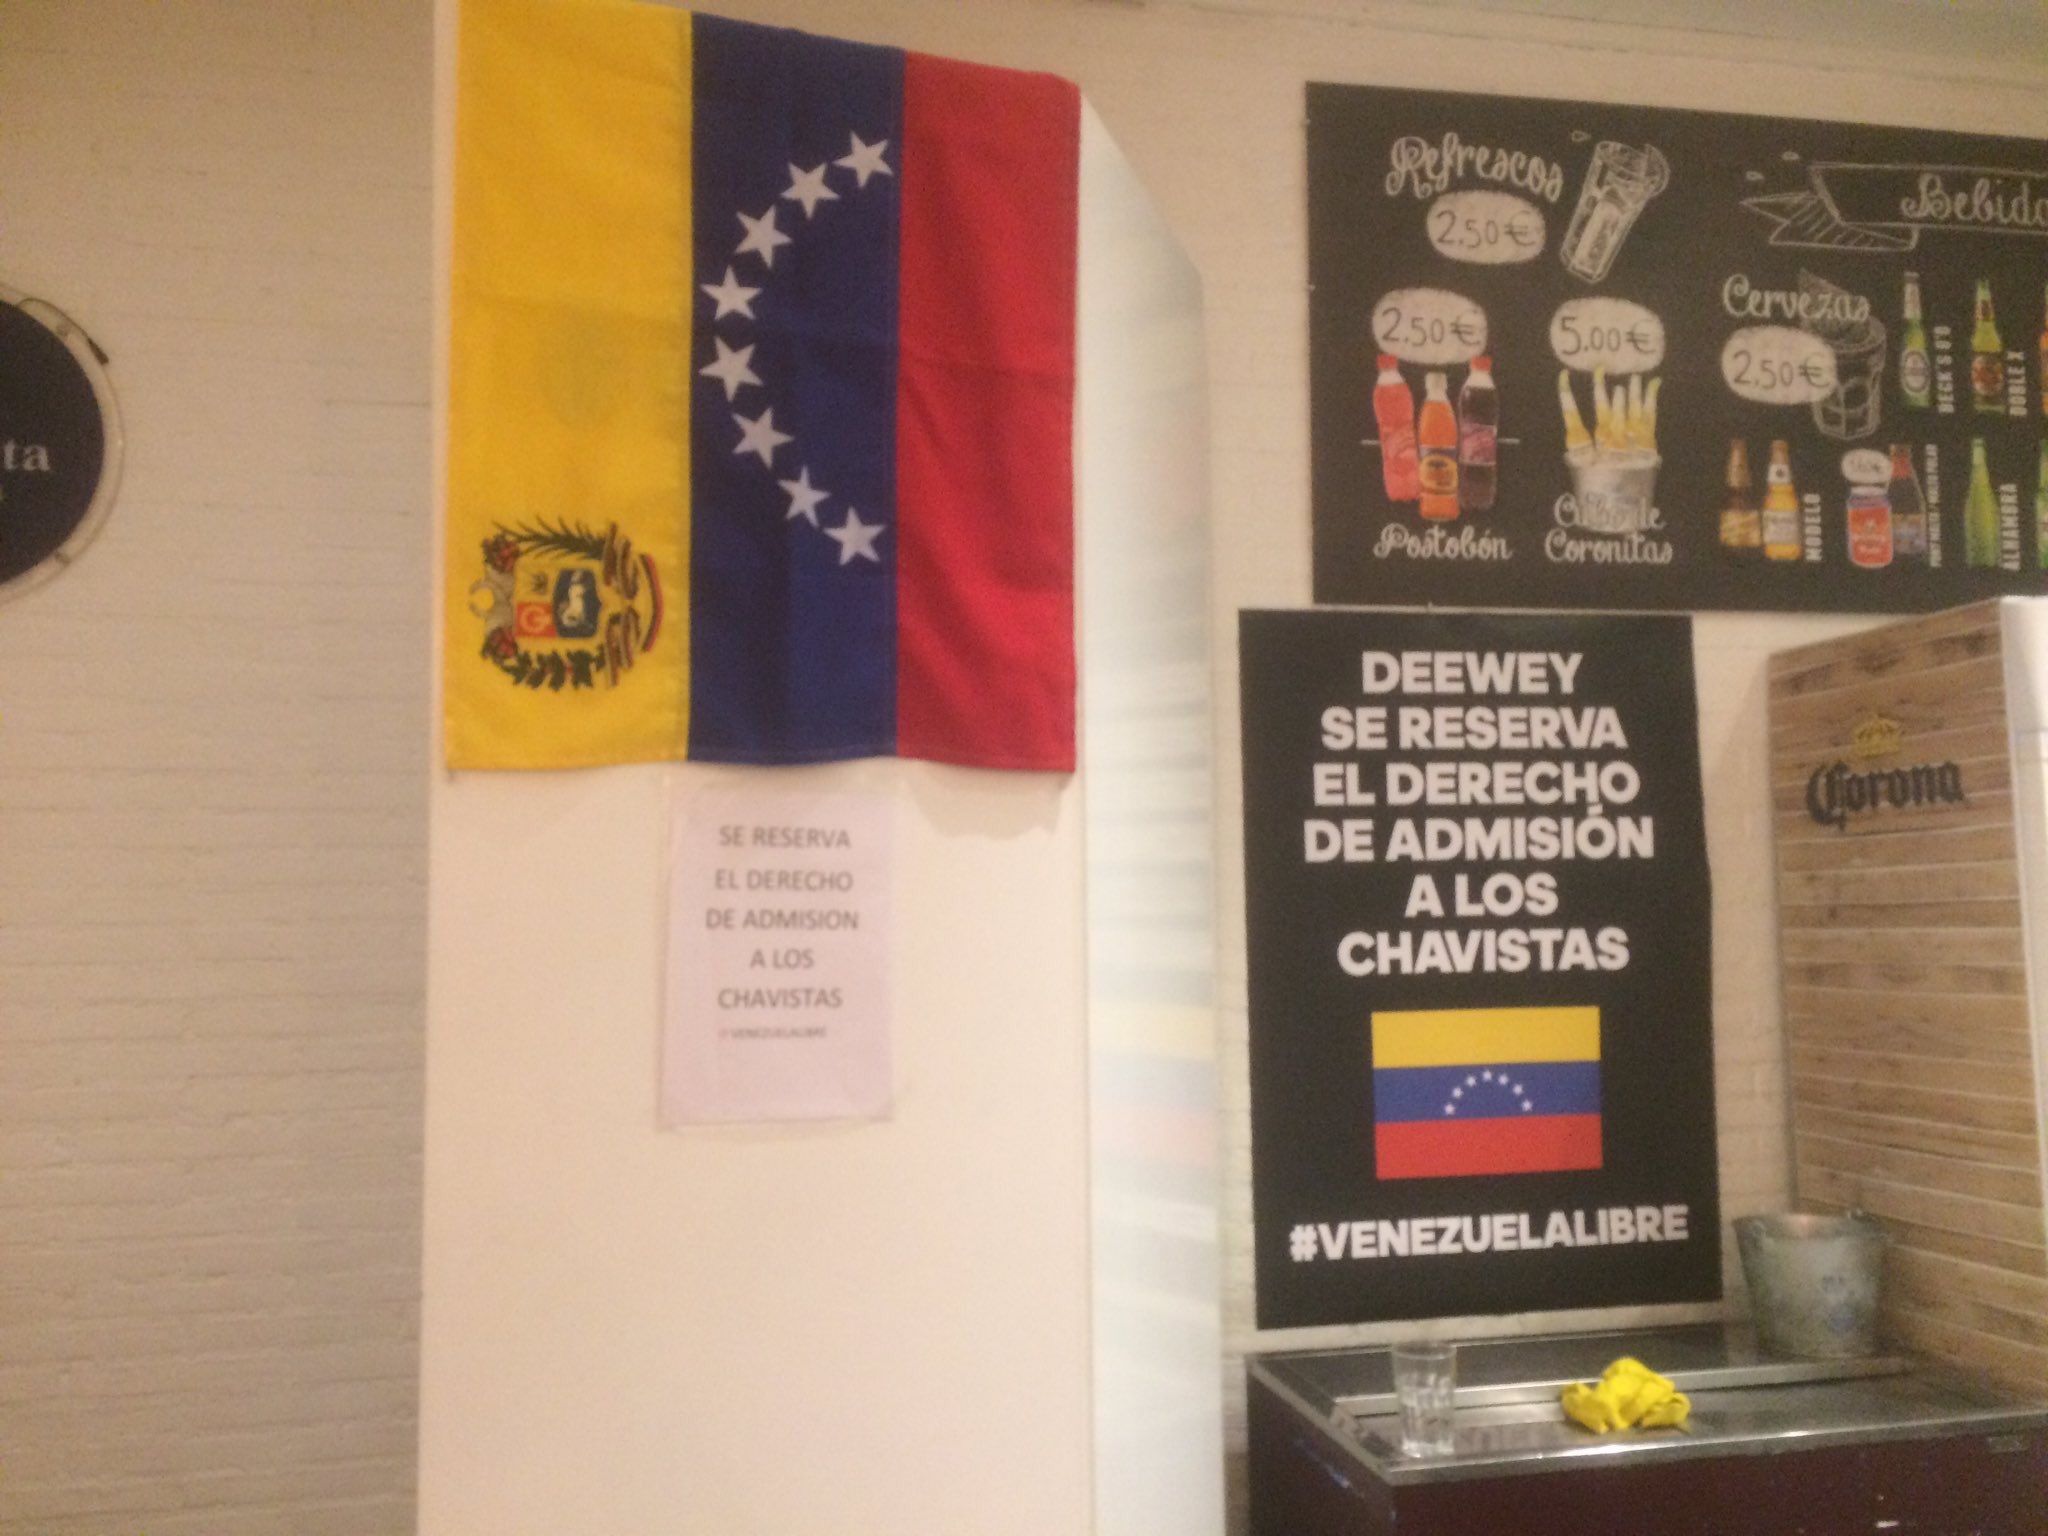 Un restaurante de Madrid prohíbe la entrada a "chavistas"